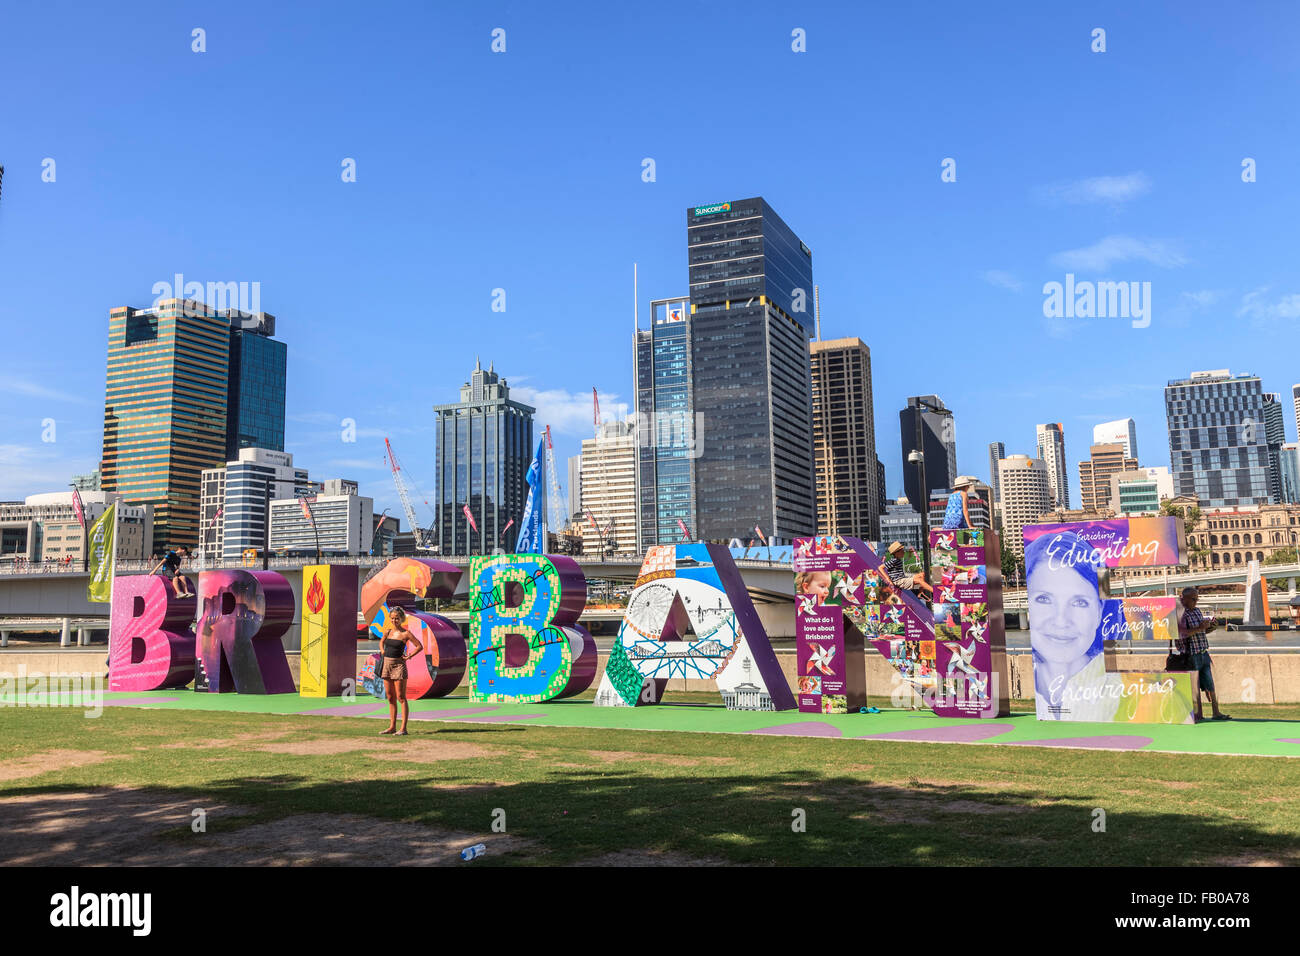 Das Brisbane-Zeichen, ein beliebter Anziehungspunkt für Einheimische und Touristen. South Bank Brisbane Queensland Australien Ozeanien Stockfoto